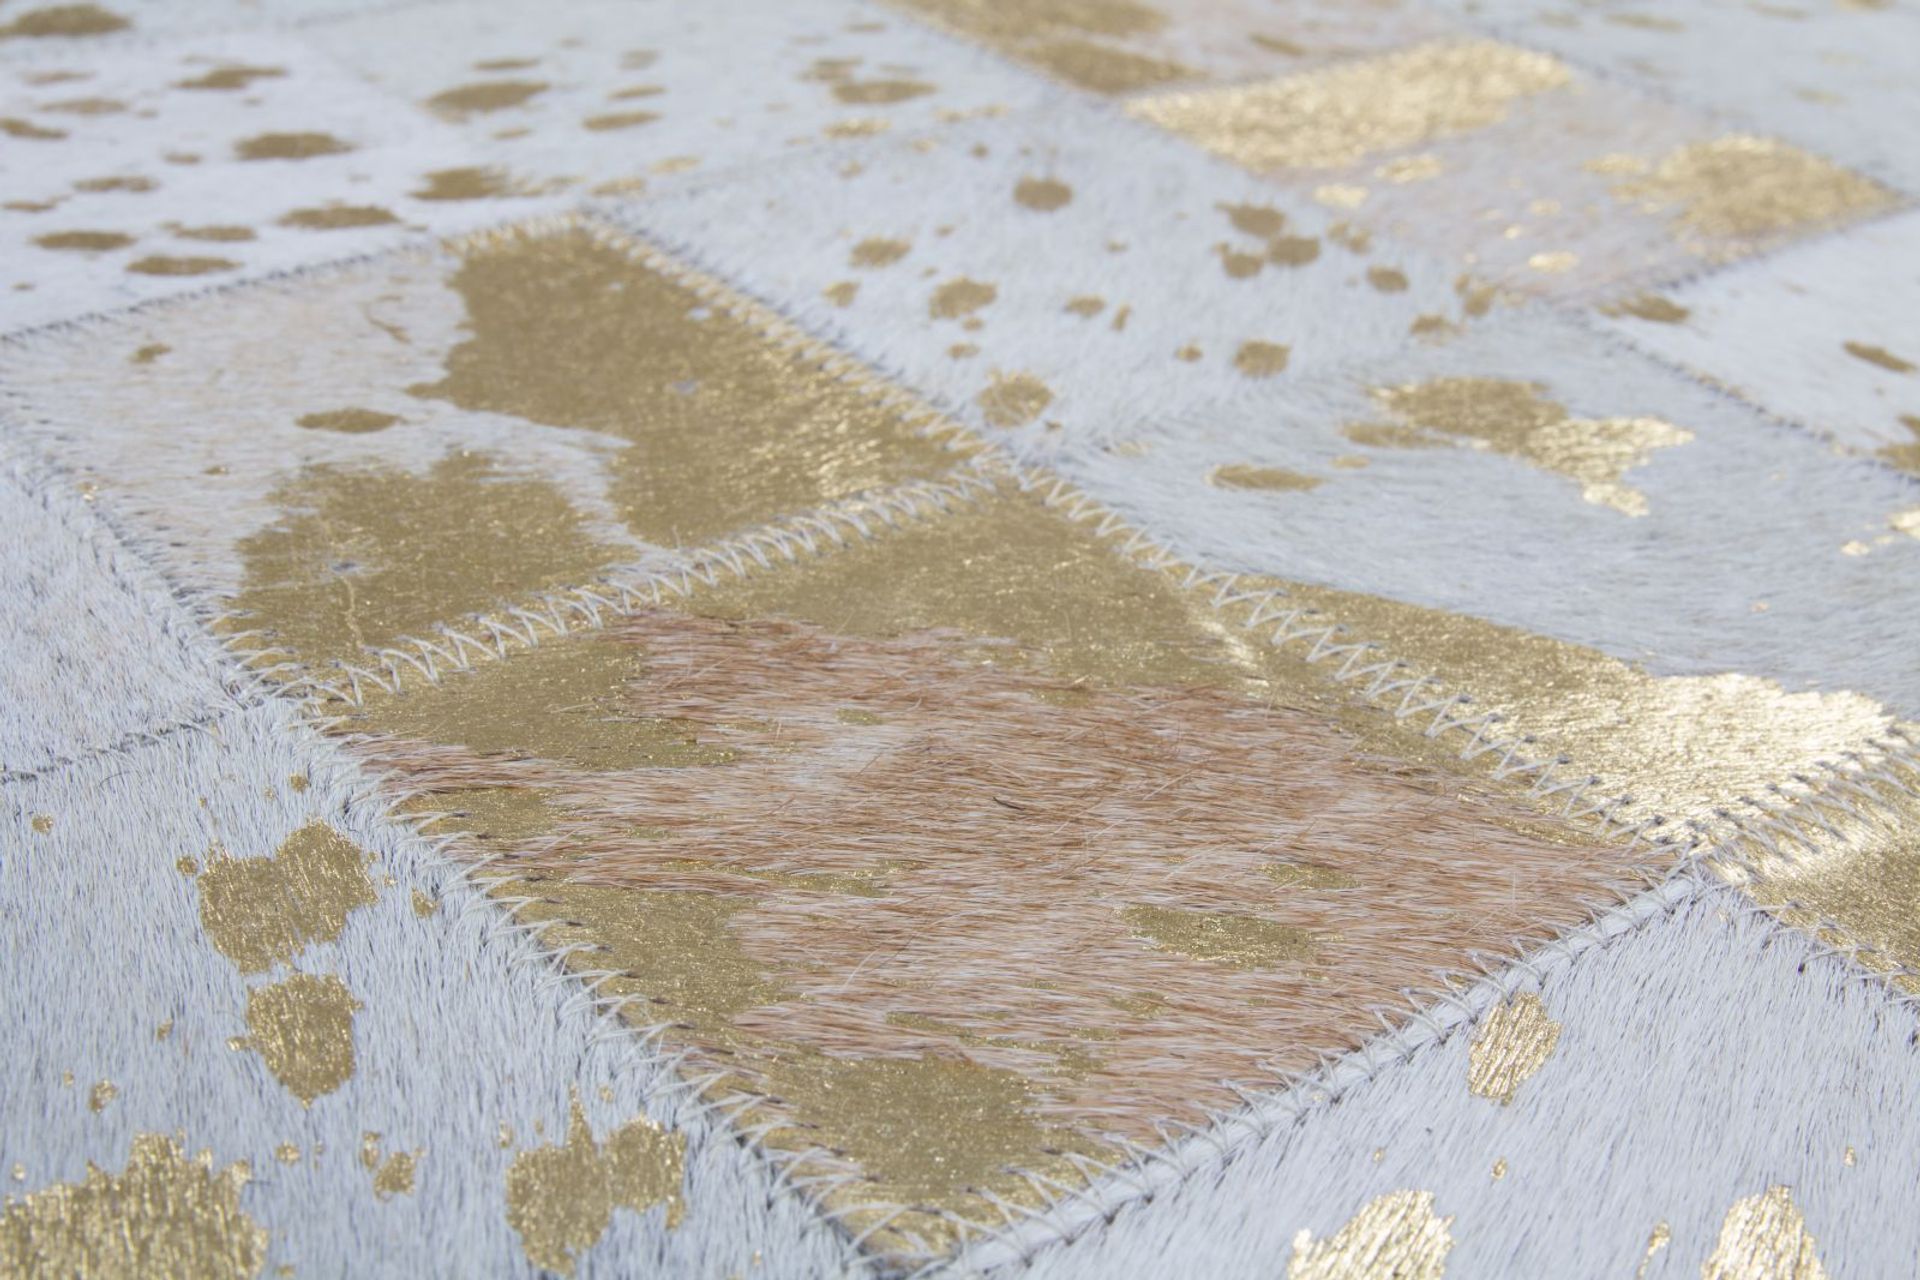 Teppich Lavish 210 Elfenbein / Gold 120 cm x 170 cm